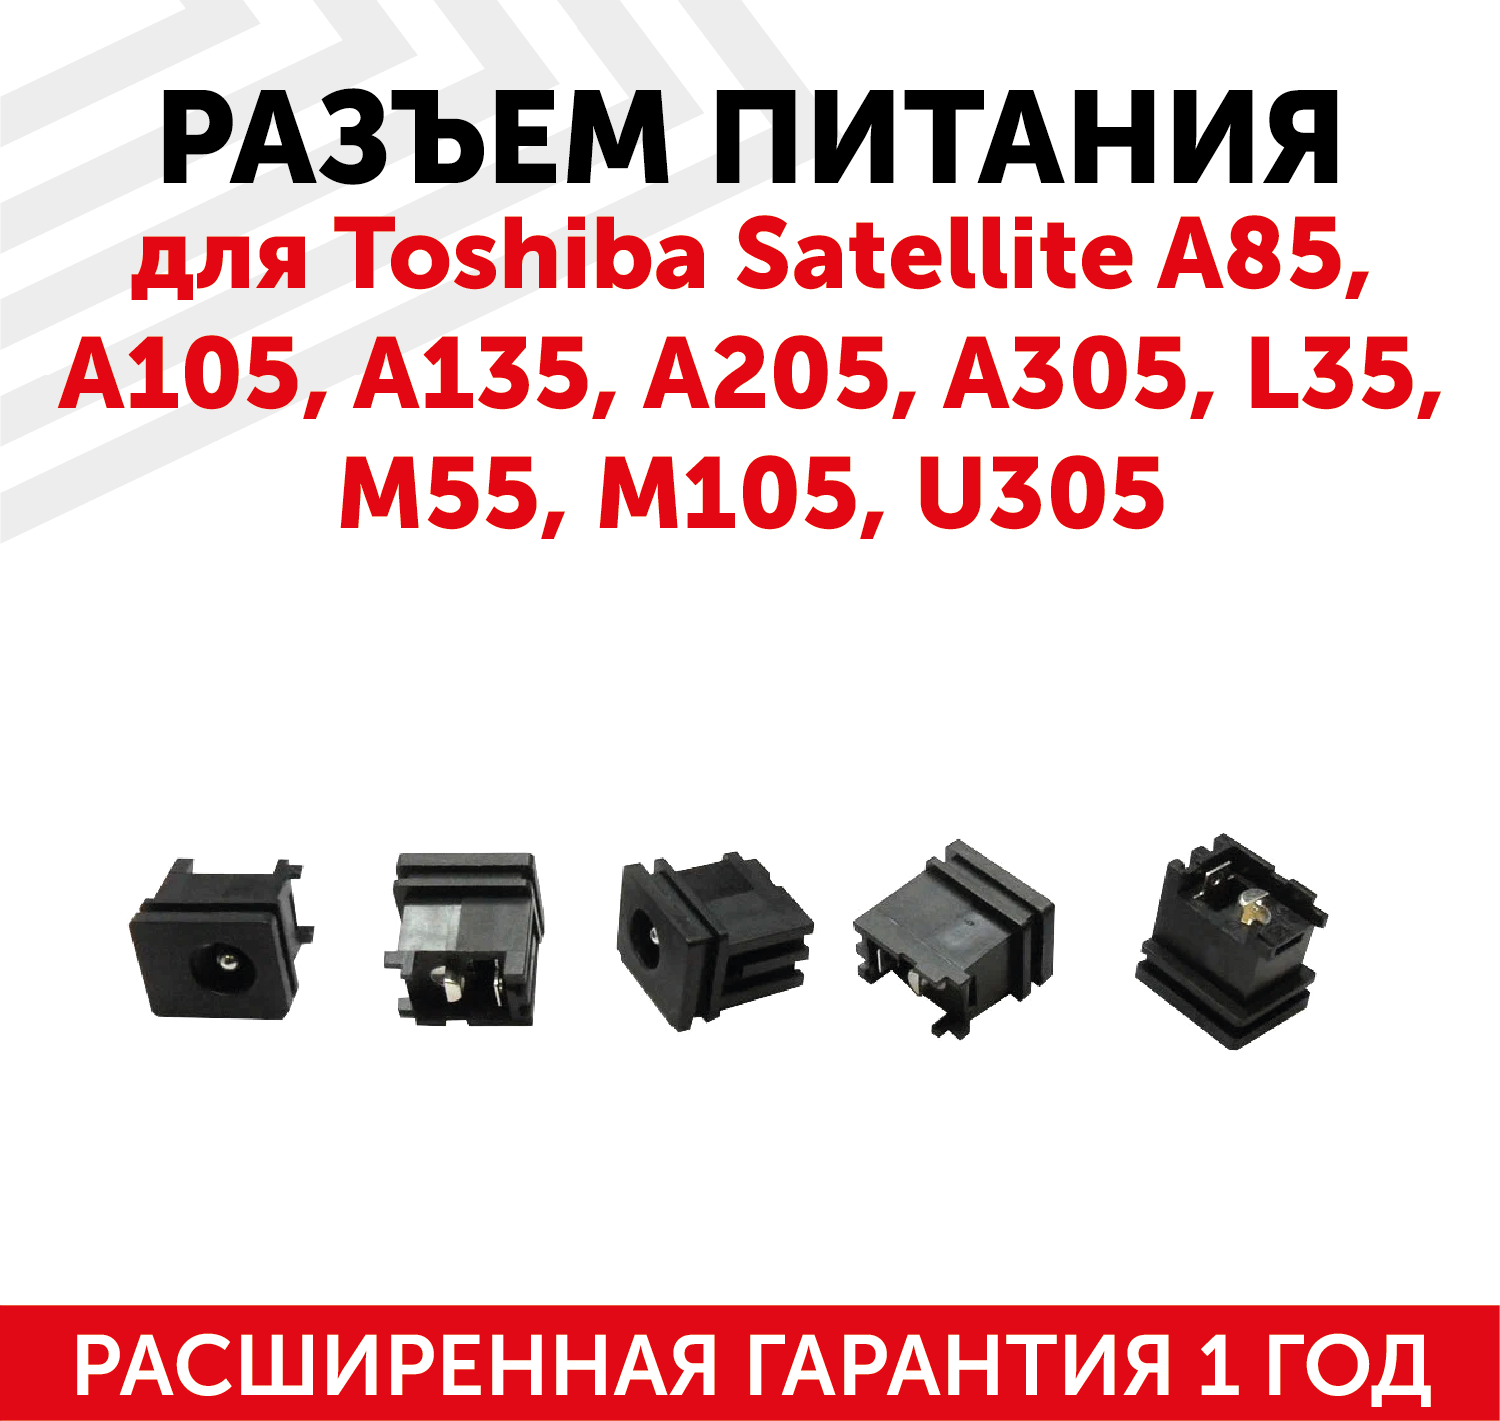 Разъем для ноутбука Toshiba Satellite A85, A105, A135, A205, A305, L35, M55, M105, U305